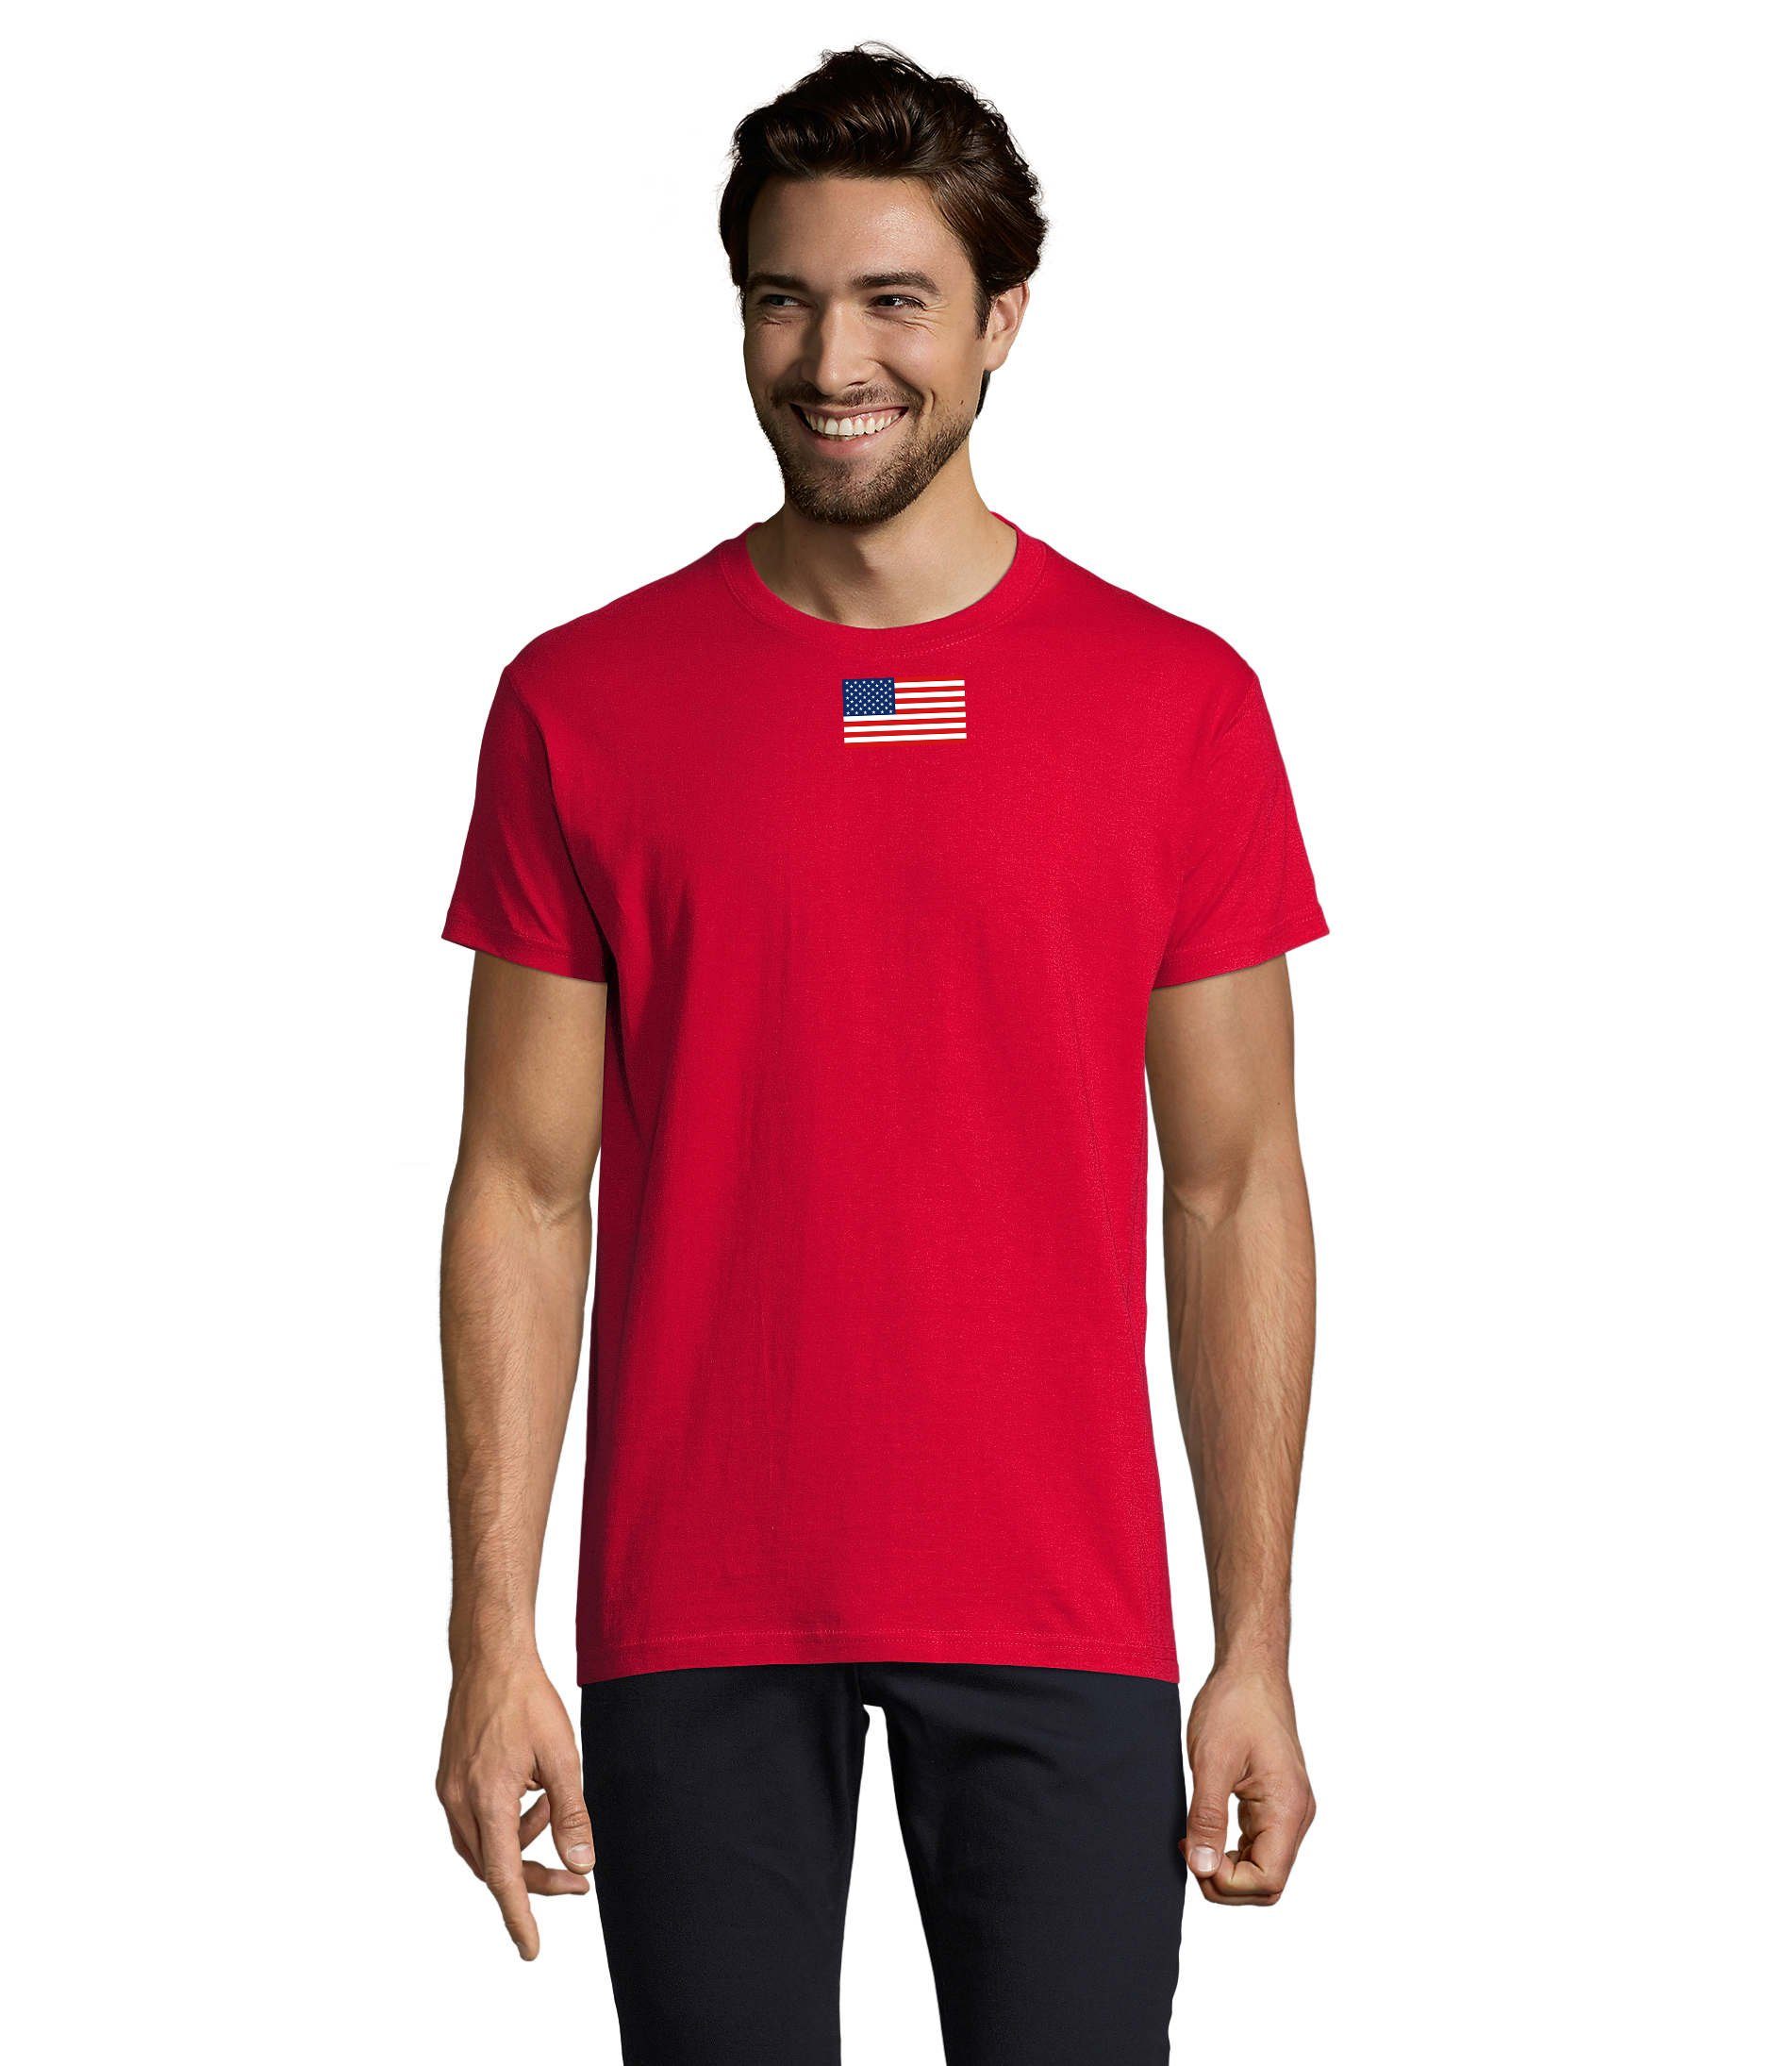 Blondie & Brownie T-Shirt Herren Nartion USA Vereinigte Staaten von Amerika Army Air Force Rot